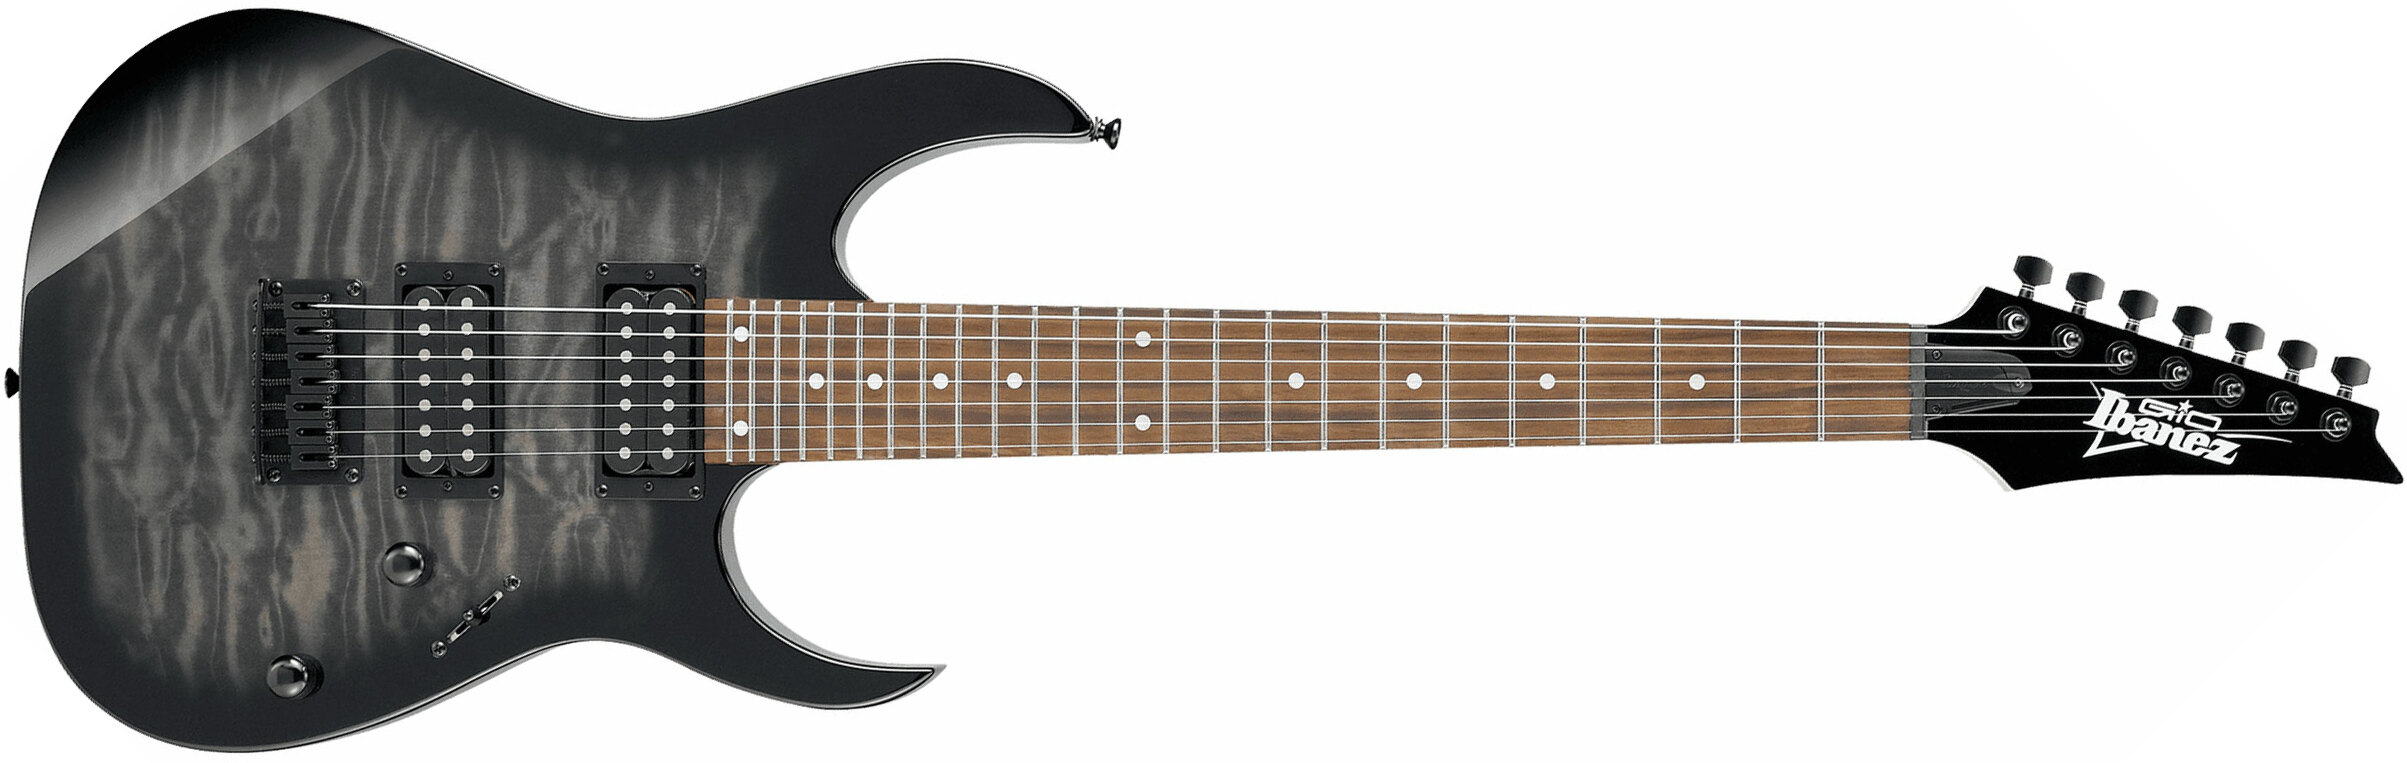 Ibanez Grg7221qa Tks Standard Hh Ht Nzp - Trans Black Sunburst - 7-saitige E-Gitarre - Main picture